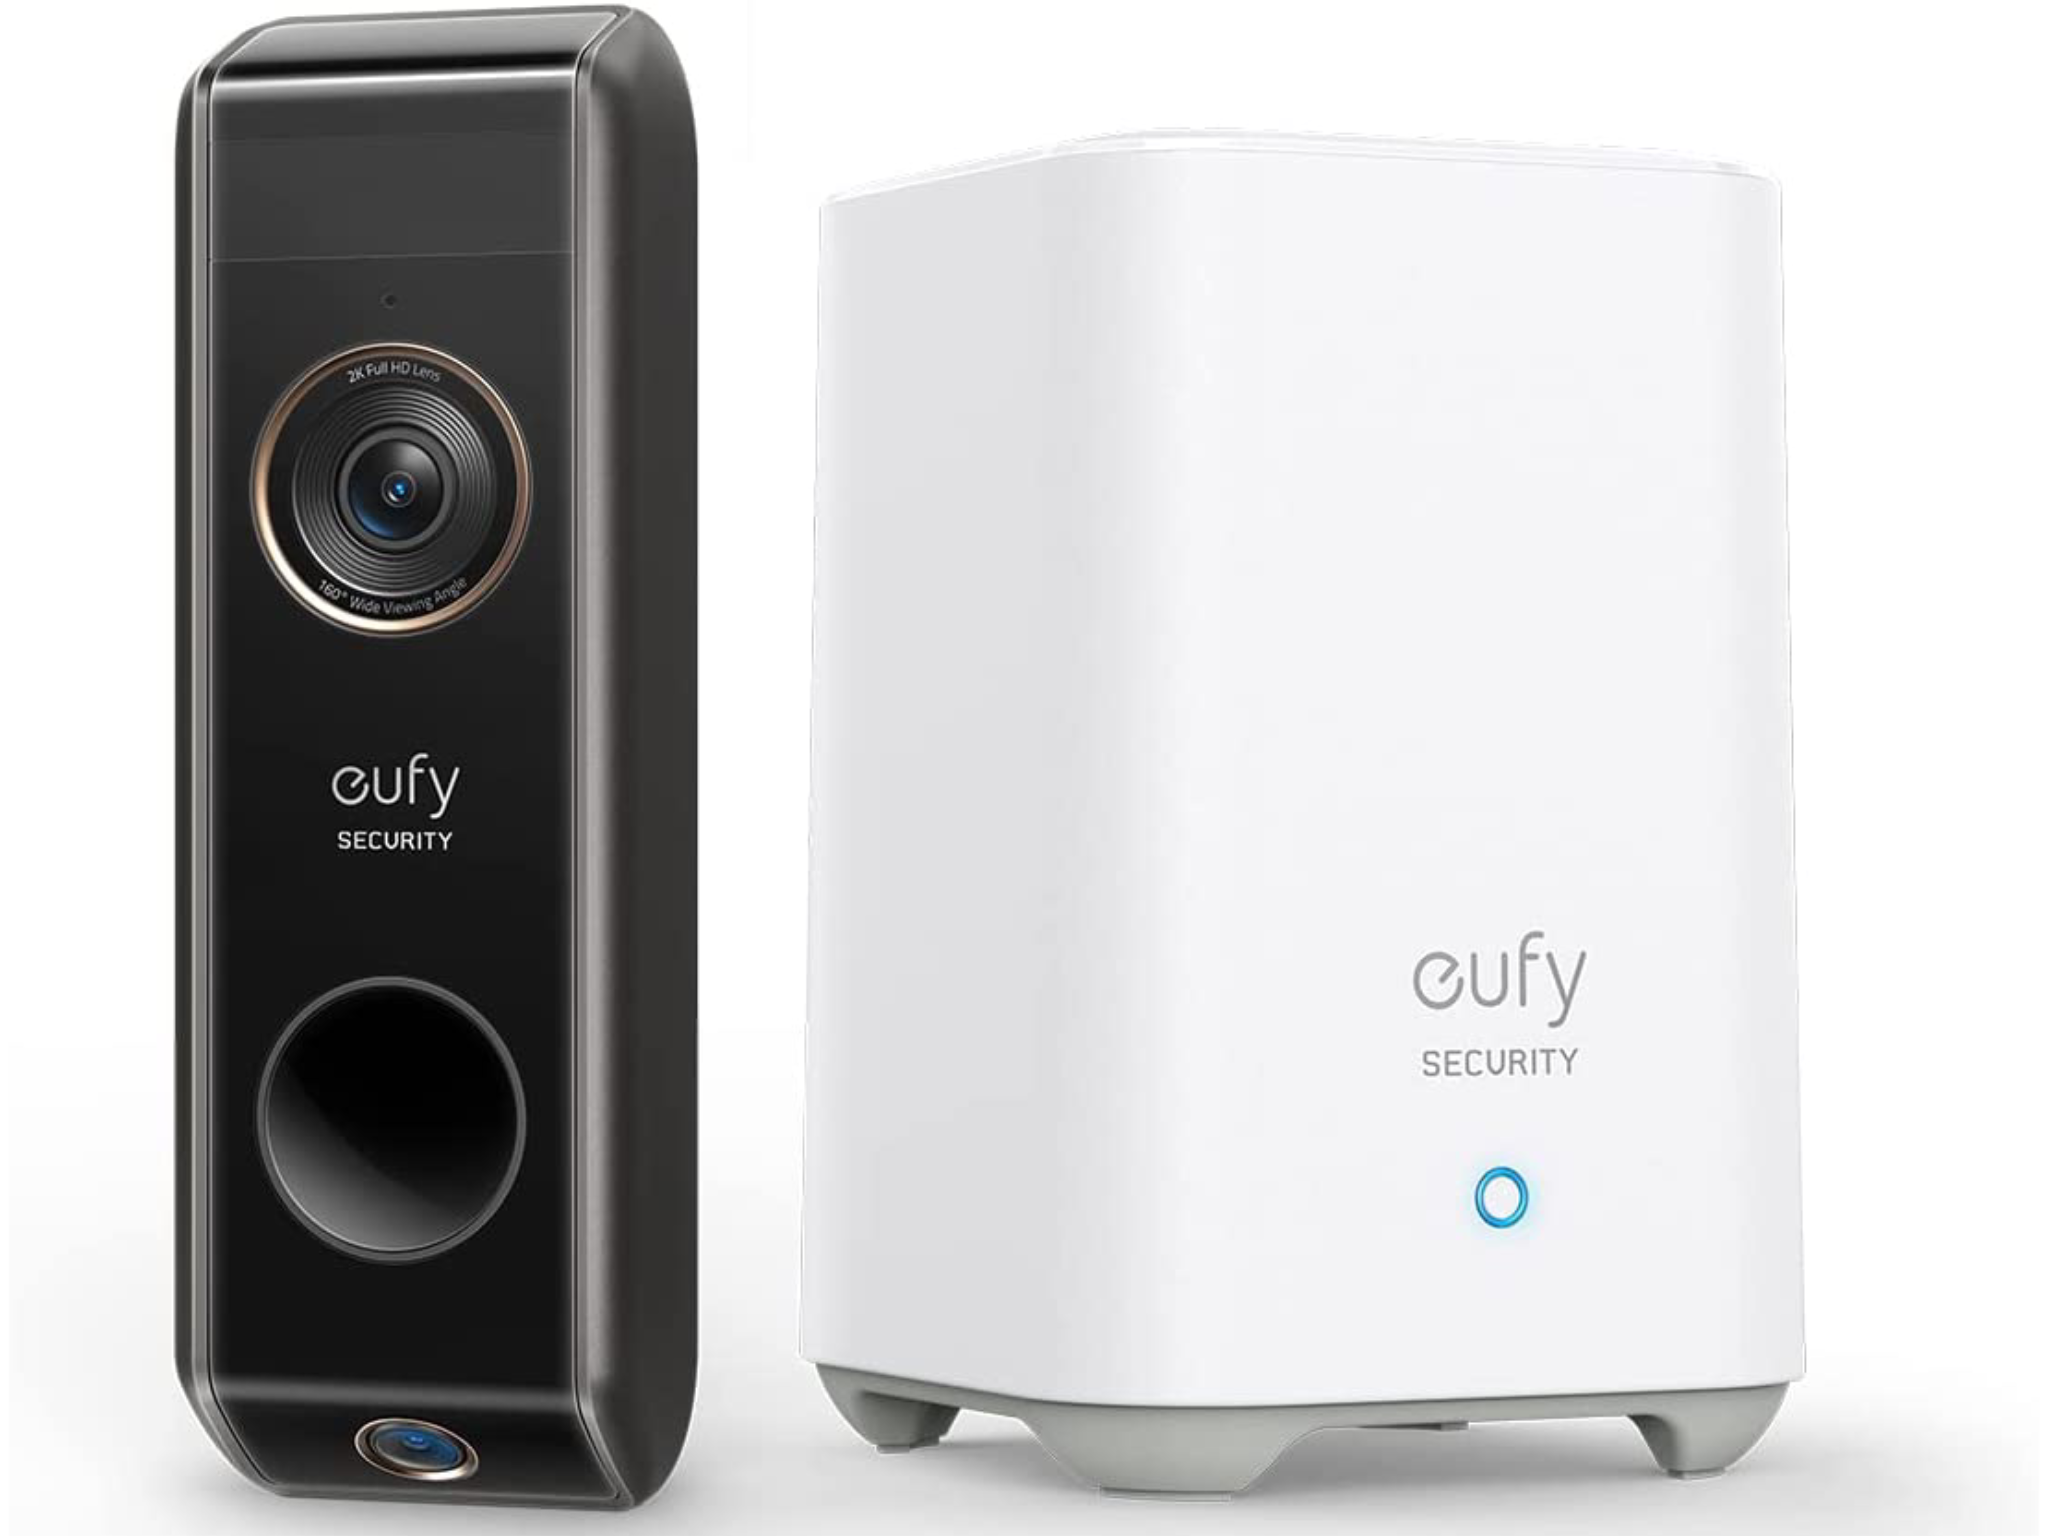 Eufy-S330-Indybest-video-doorbell-review